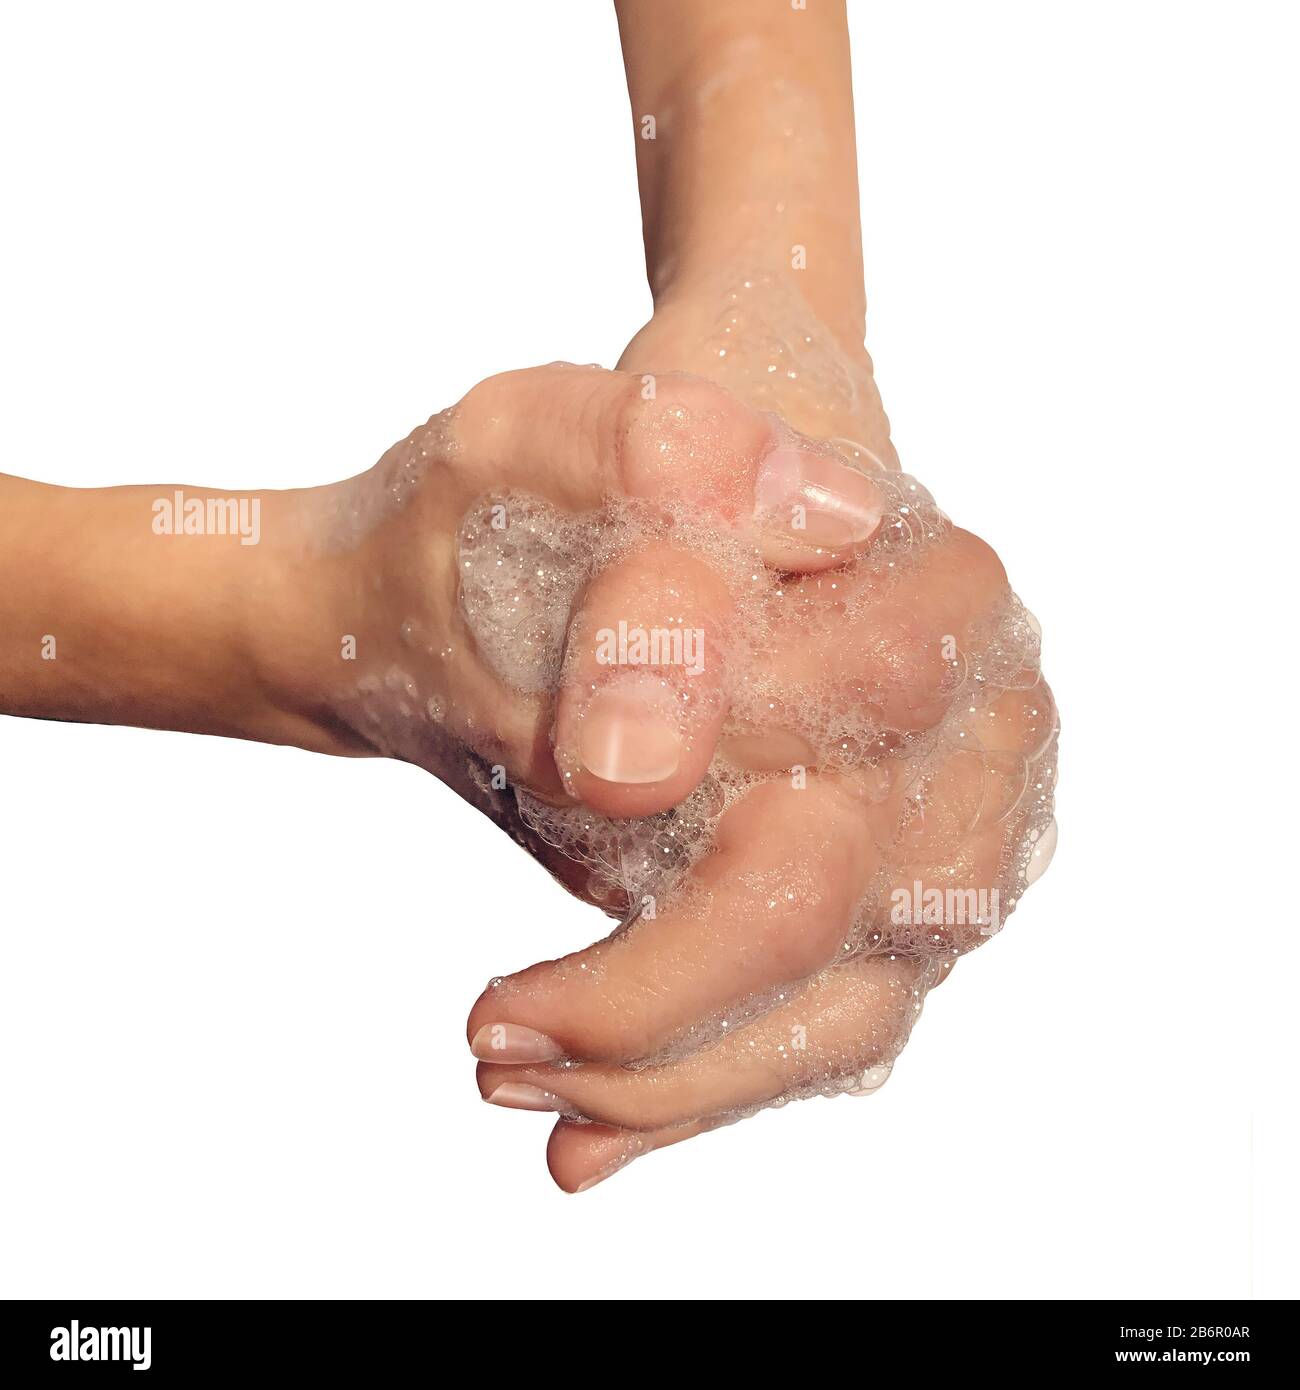 Higiene del lavado de manos usando jabón y agua para limpiar la piel sucia y contaminada para evitar enfermedades o la gripe lavando las manos y limpiando los dedos. Foto de stock